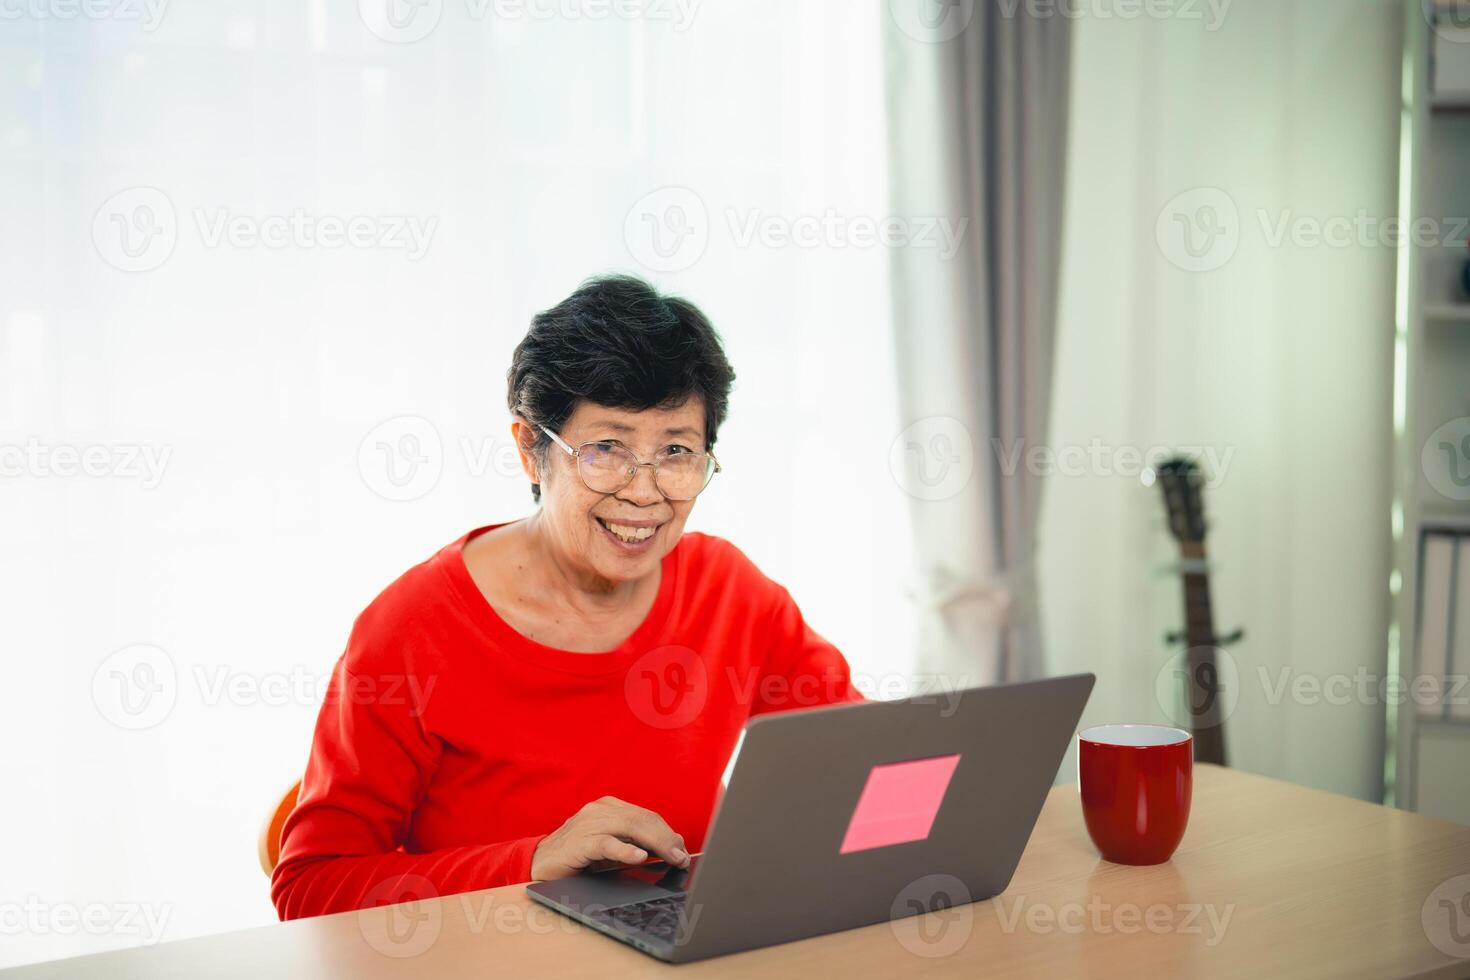 senior gammal asiatisk kvinna arbetssätt efter pensionering använder sig av bärbar dator på Hem. gammal frilansare arbetssätt eller inlärning ny teknologi på bärbar dator i levande rum. pensionering aktivitet begrepp. foto